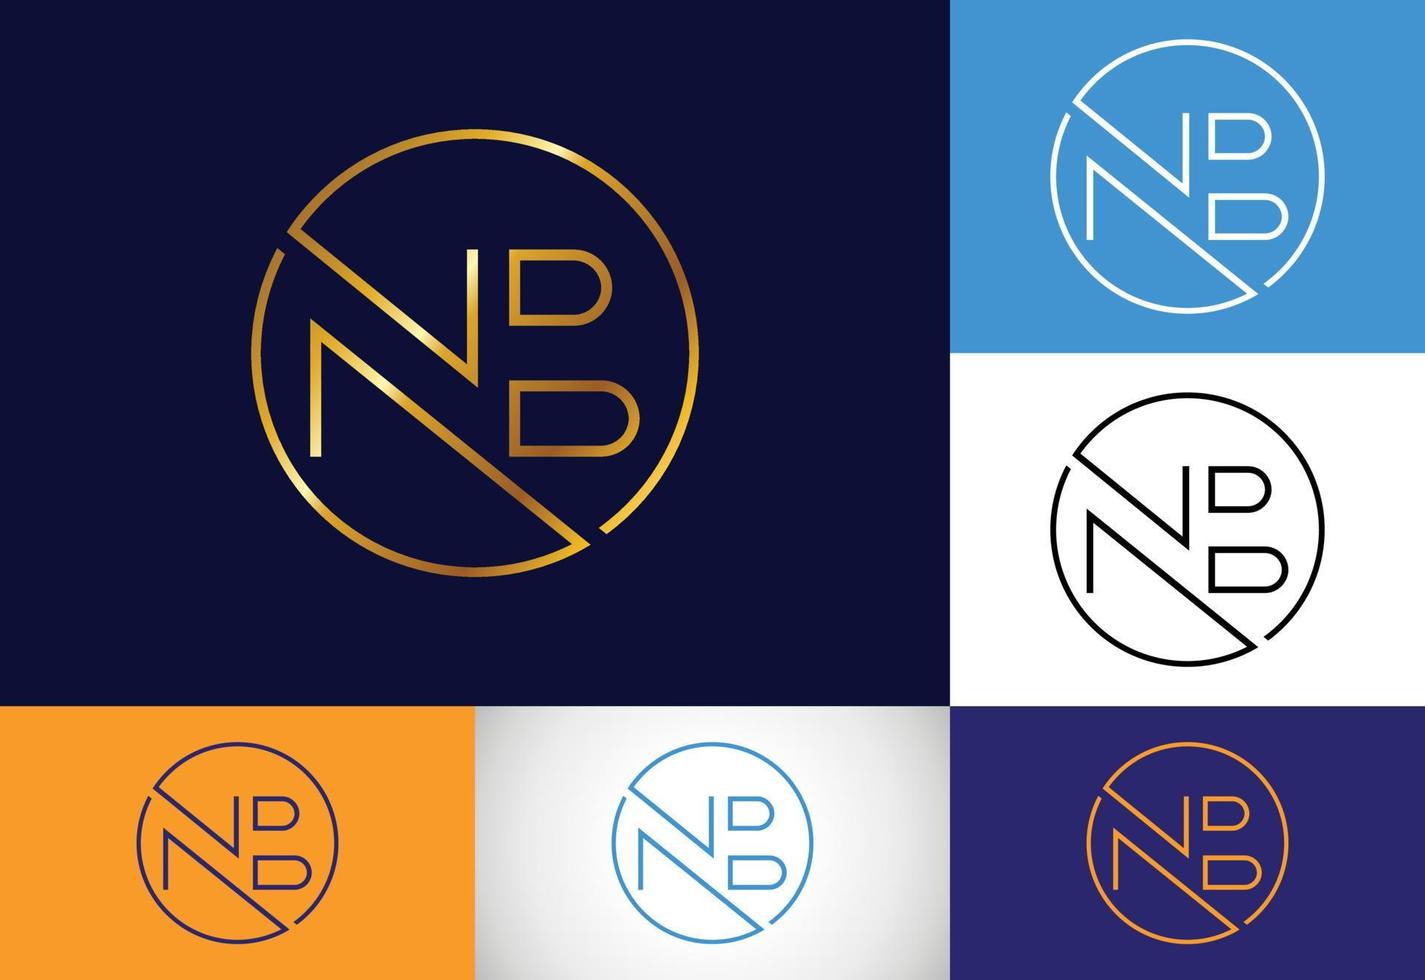 vetor de design de logotipo nb letra inicial do monograma. símbolo gráfico do alfabeto para negócios corporativos